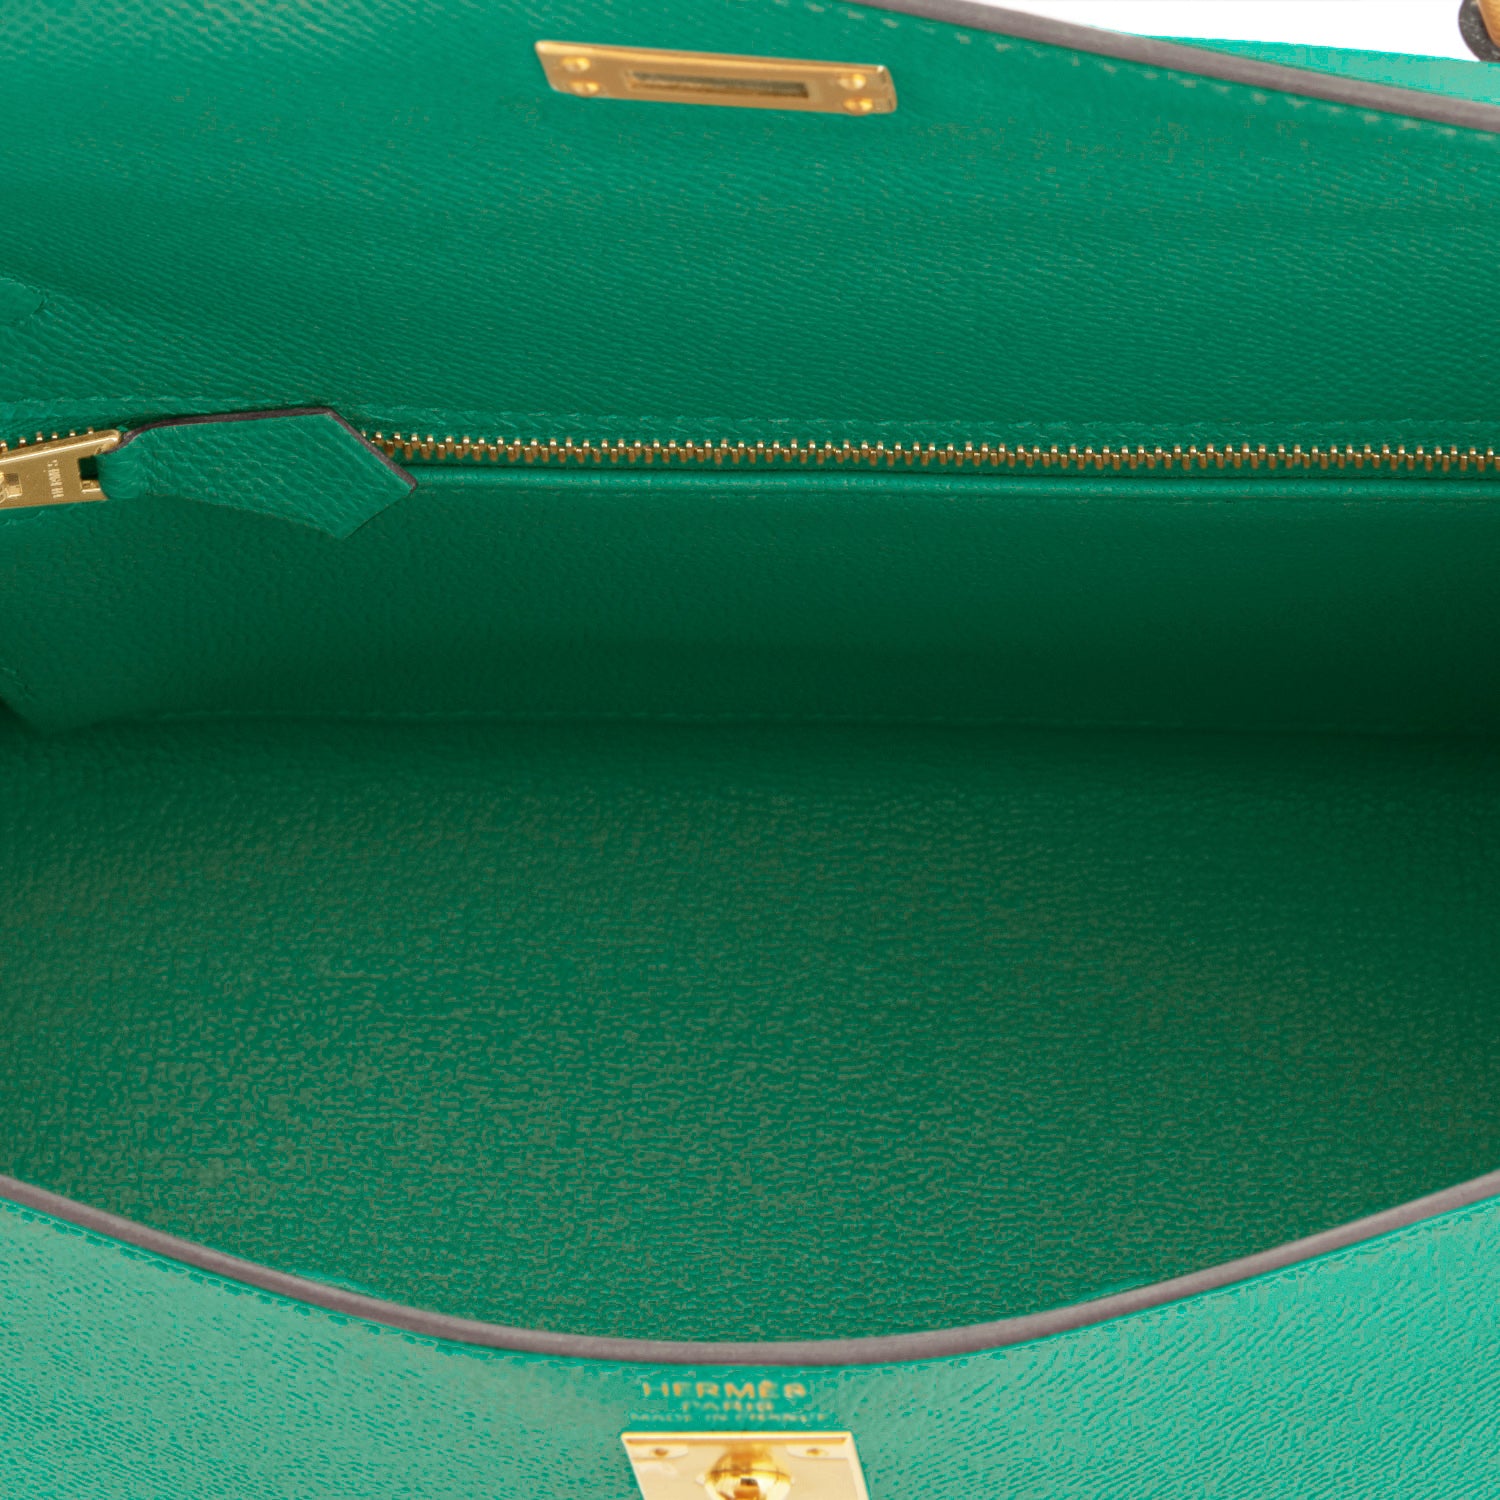 Hermes Kelly 25 Orange Sellier Epsom Leather Shoulder Bag Gold